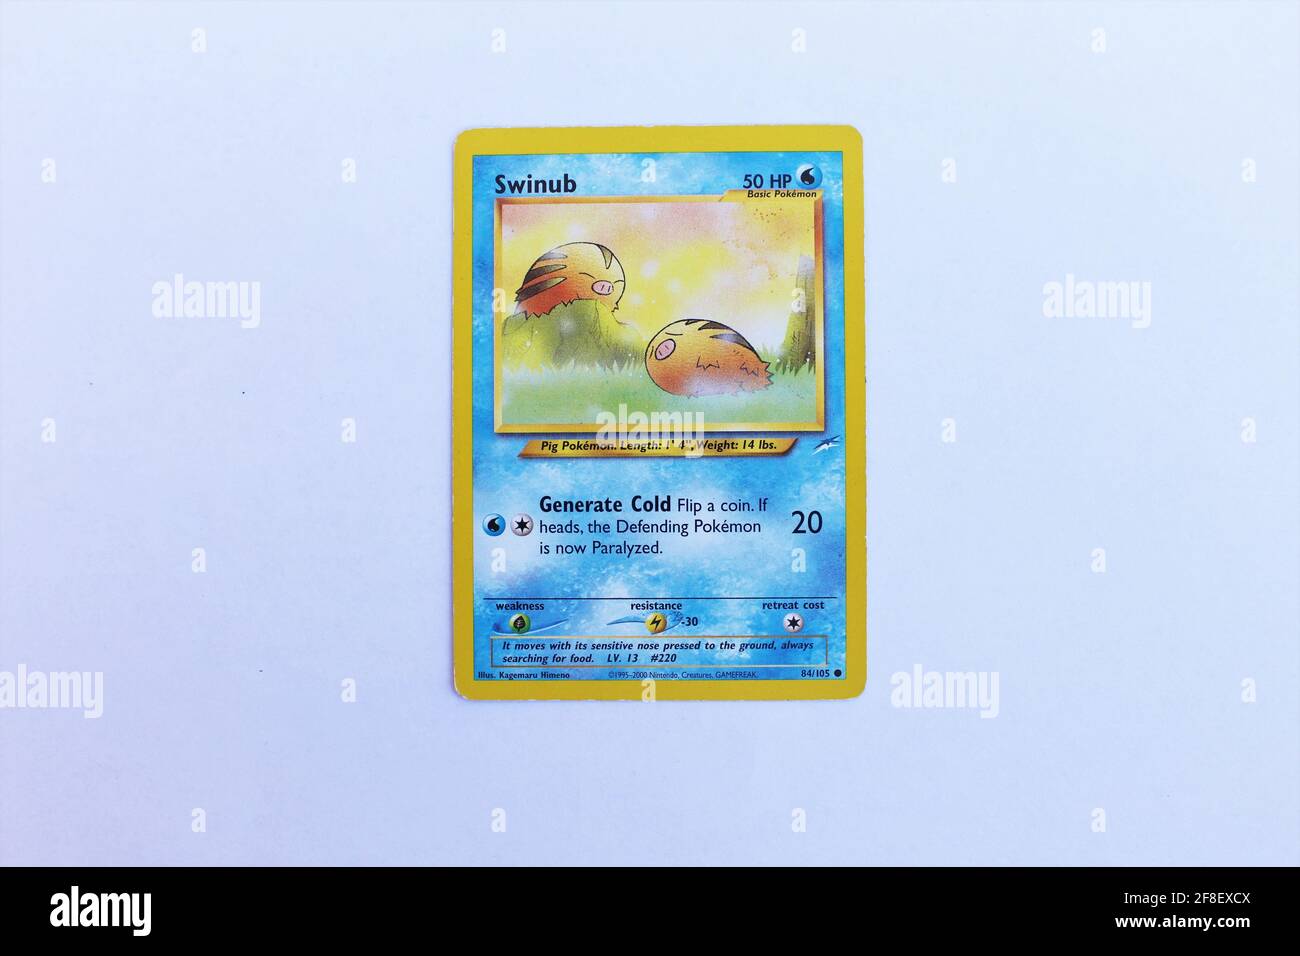 Swinub Pokemon tarjeta cara frontal El Pokémon Trading Card Game Es un juego de cartas coleccionable basado en la franquicia Pokémon de Nintendo de videojuegos y anime Foto de stock